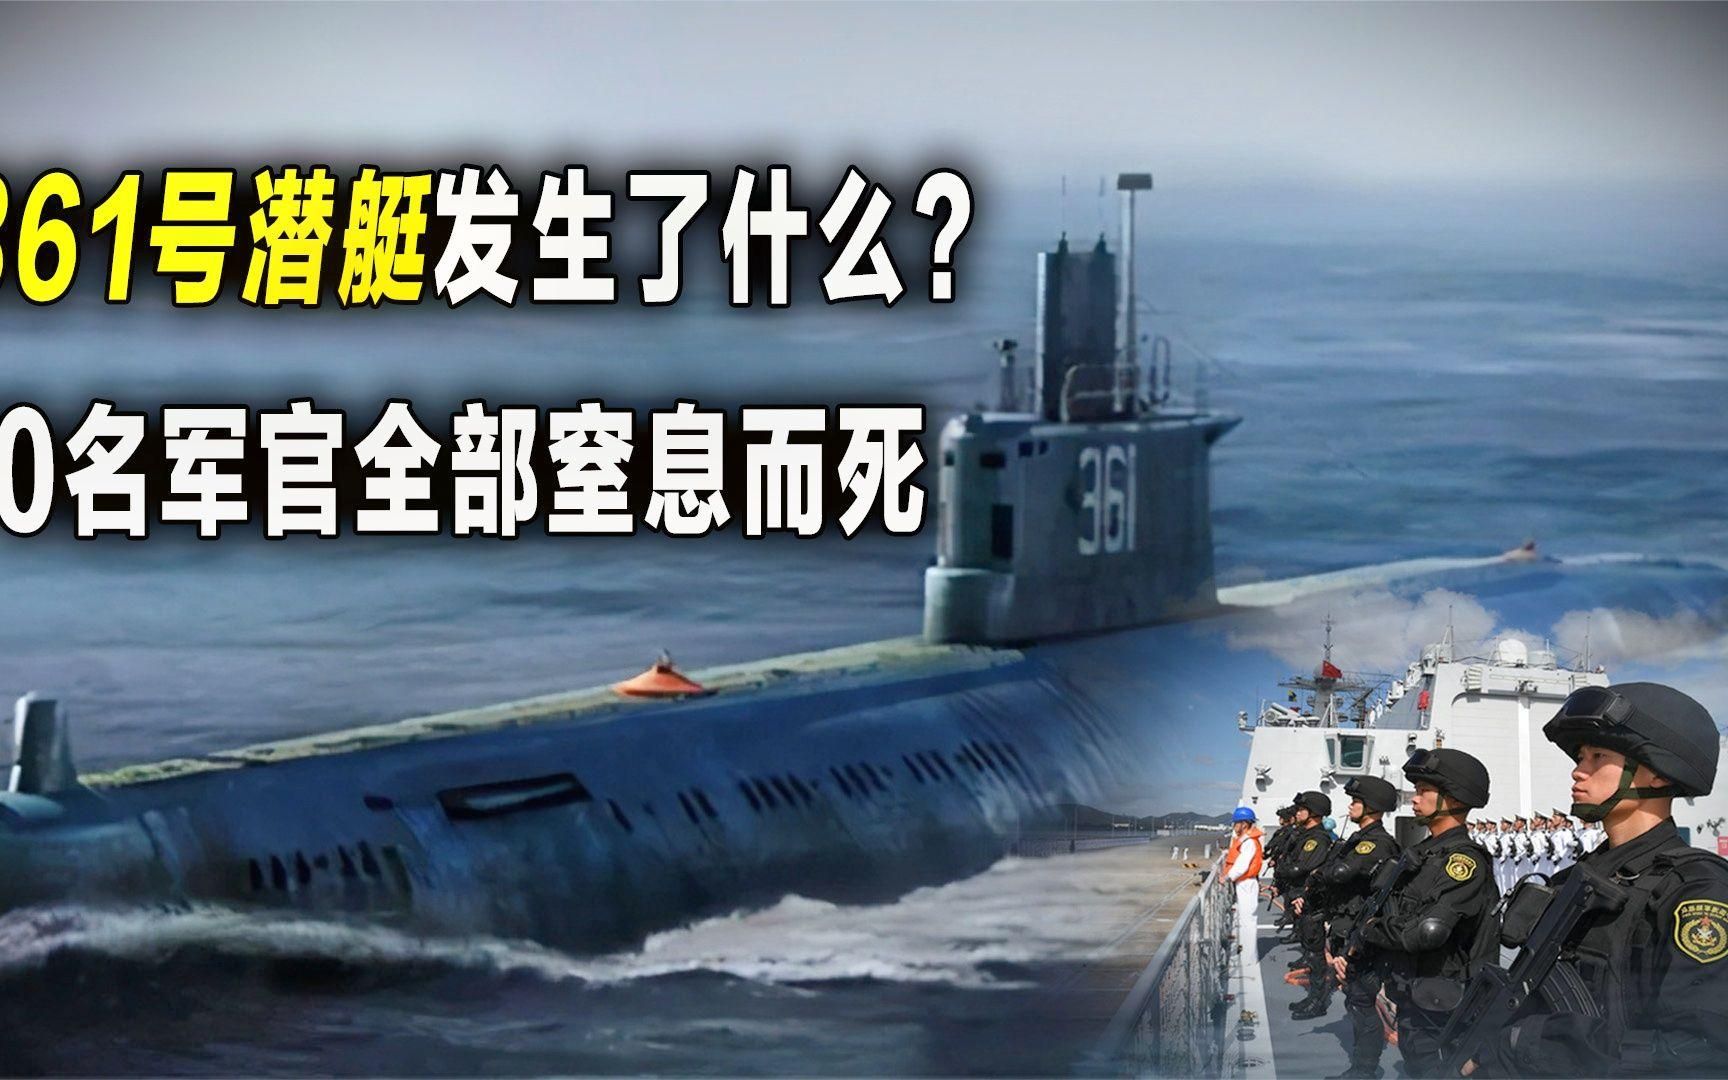 18年前361号潜艇发生了什么?潜艇完好无损,70名官兵却葬身大海